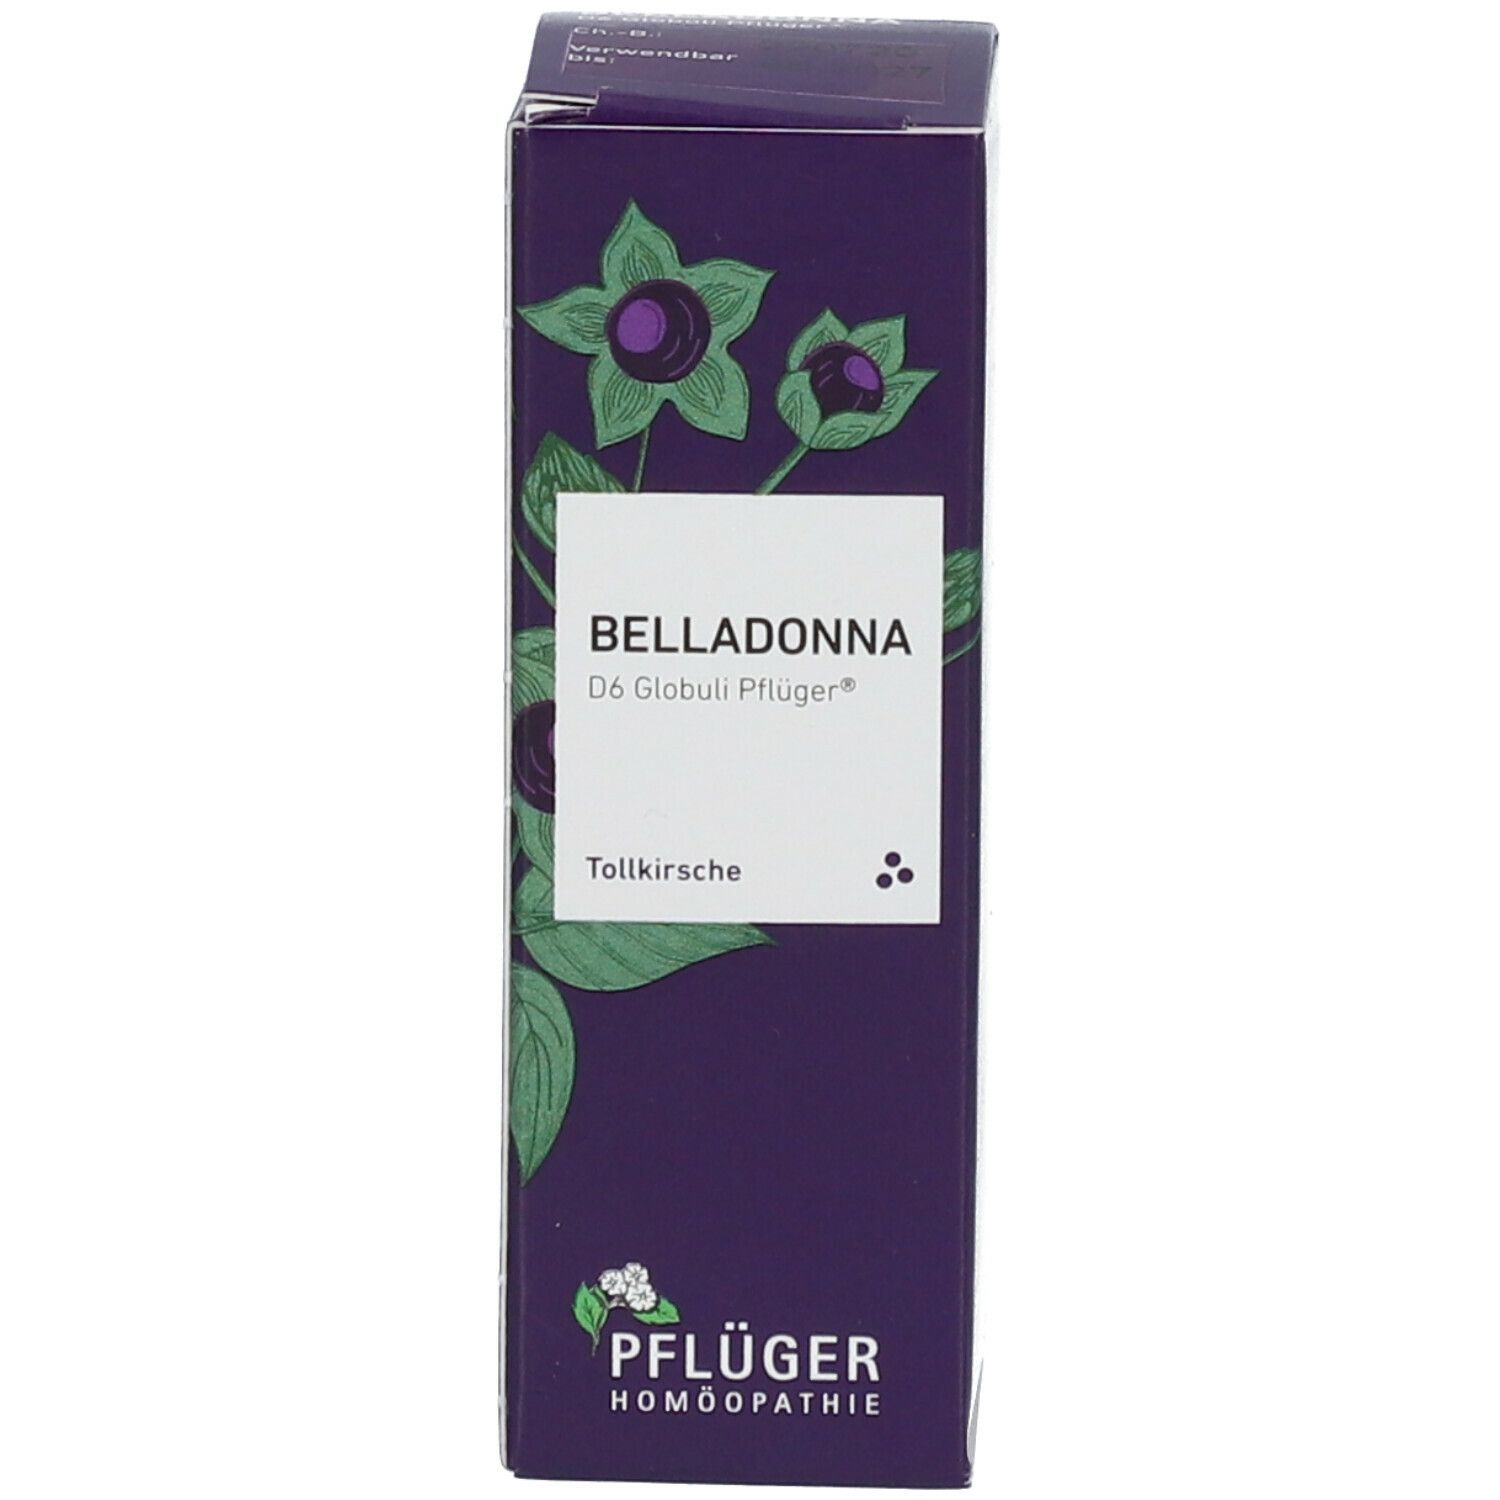 Belladonna D6 Globuli Pflüger®